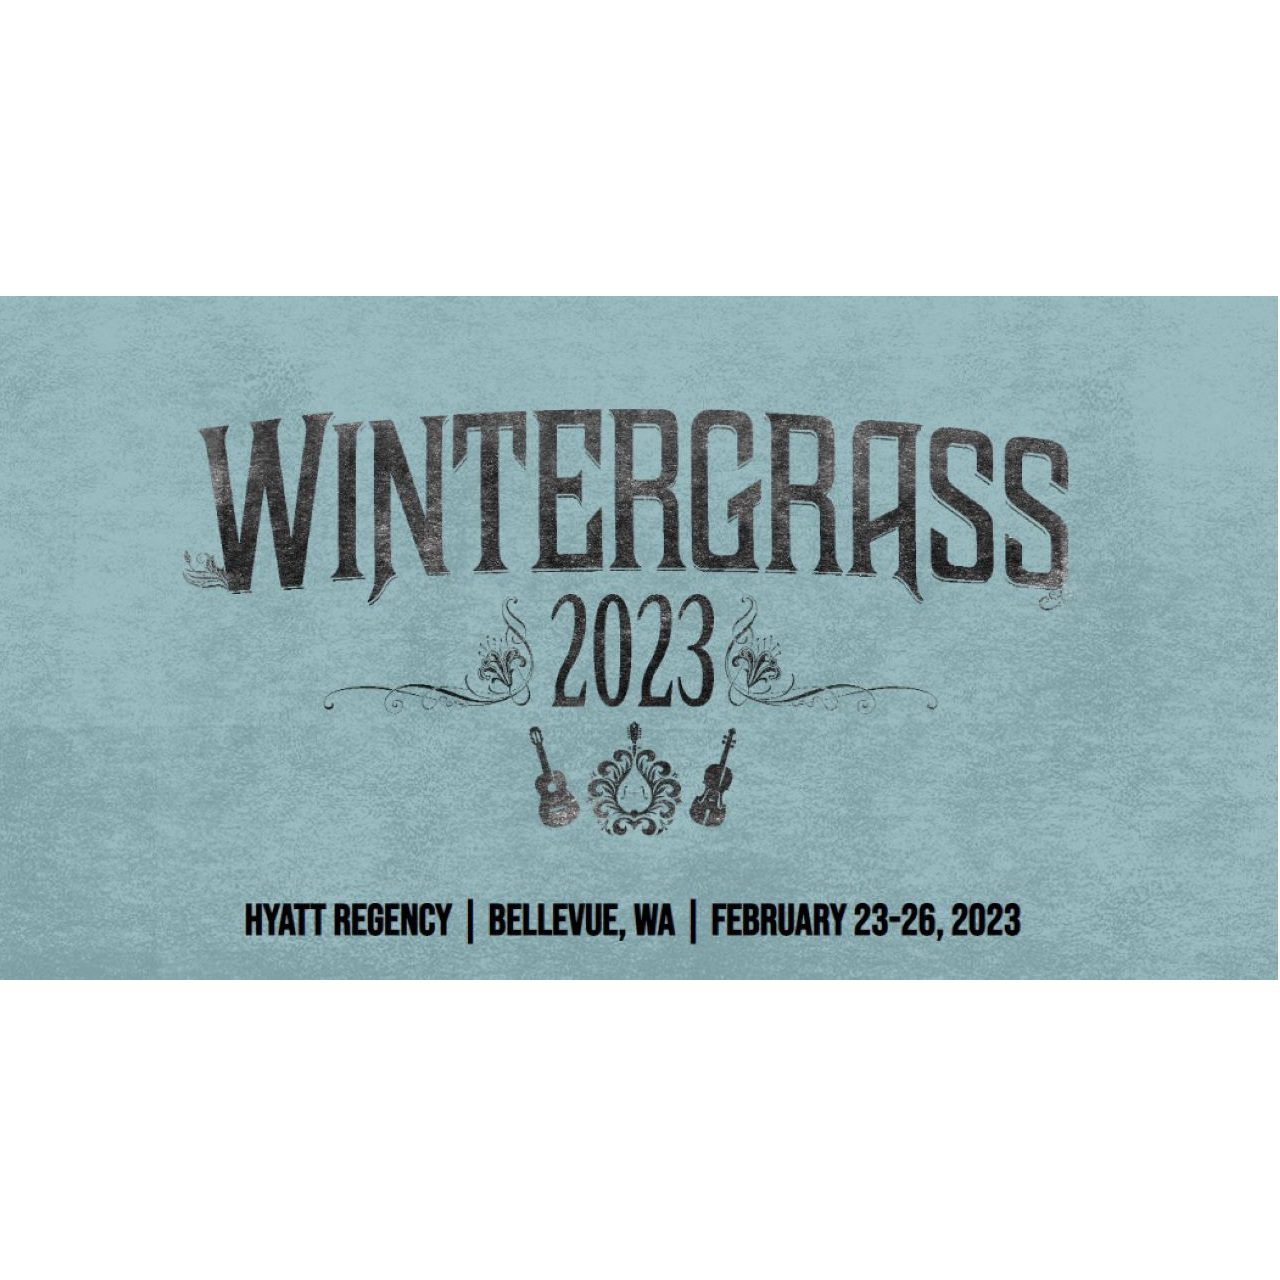 Wintergrass 2023 in Bellevue, Washington